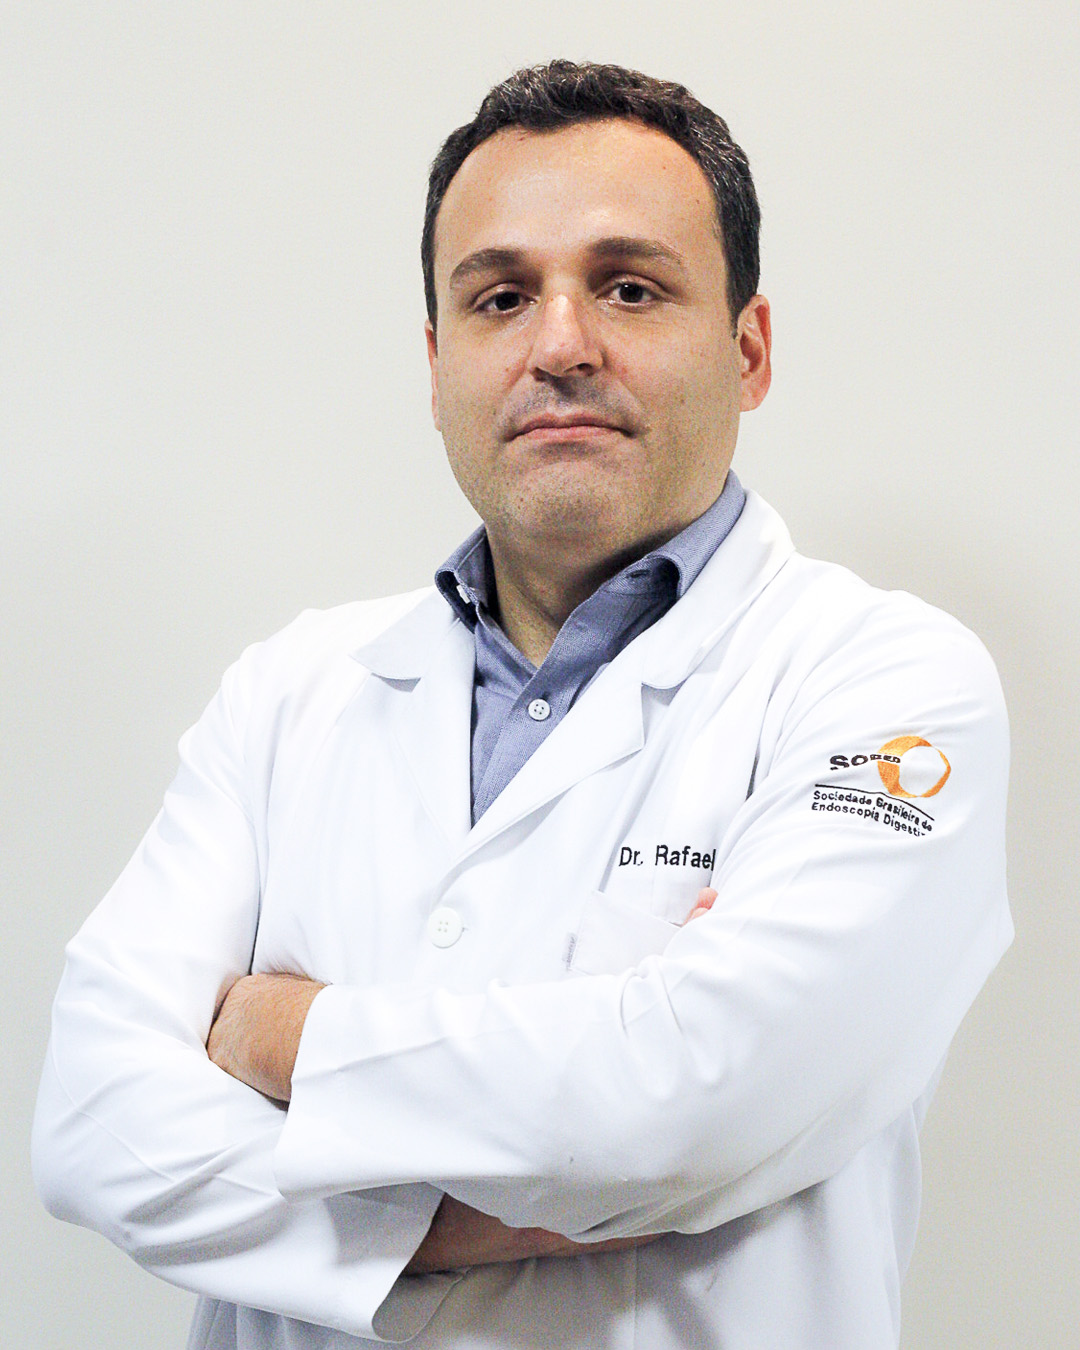 Dr. Rafael Pasqualini